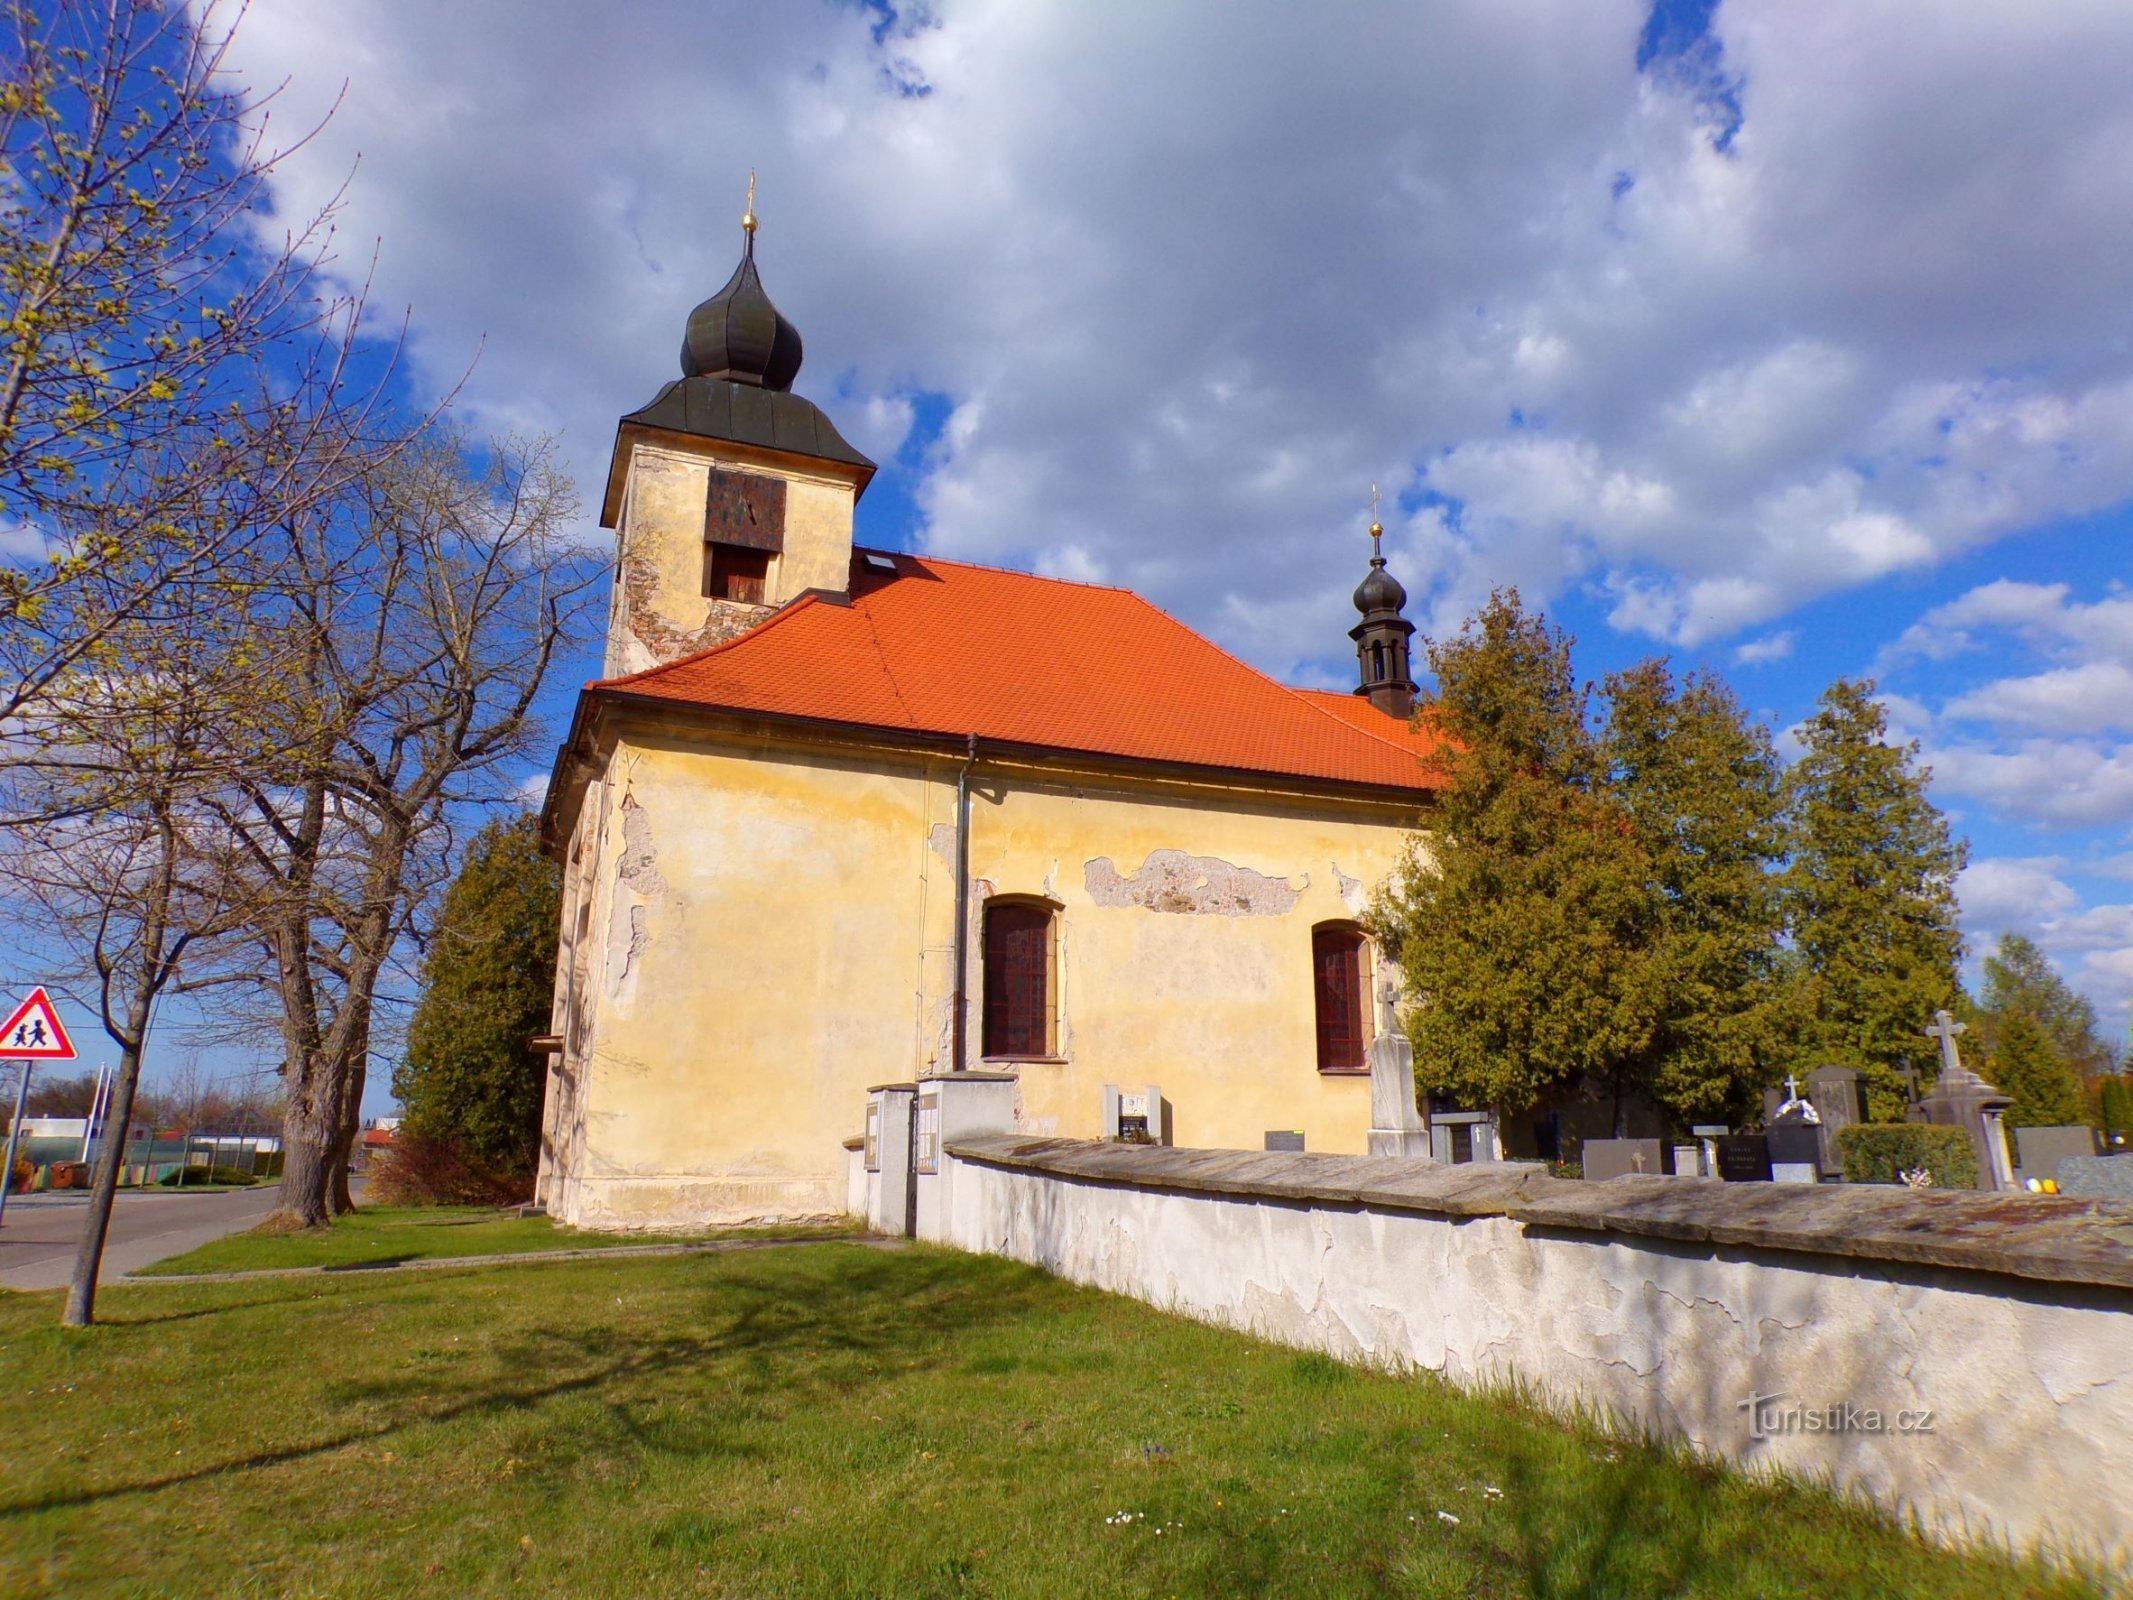 Église de St. Jean Népomucène à Lány na Důlk (Pardubice, 23.4.2022/XNUMX/XNUMX)